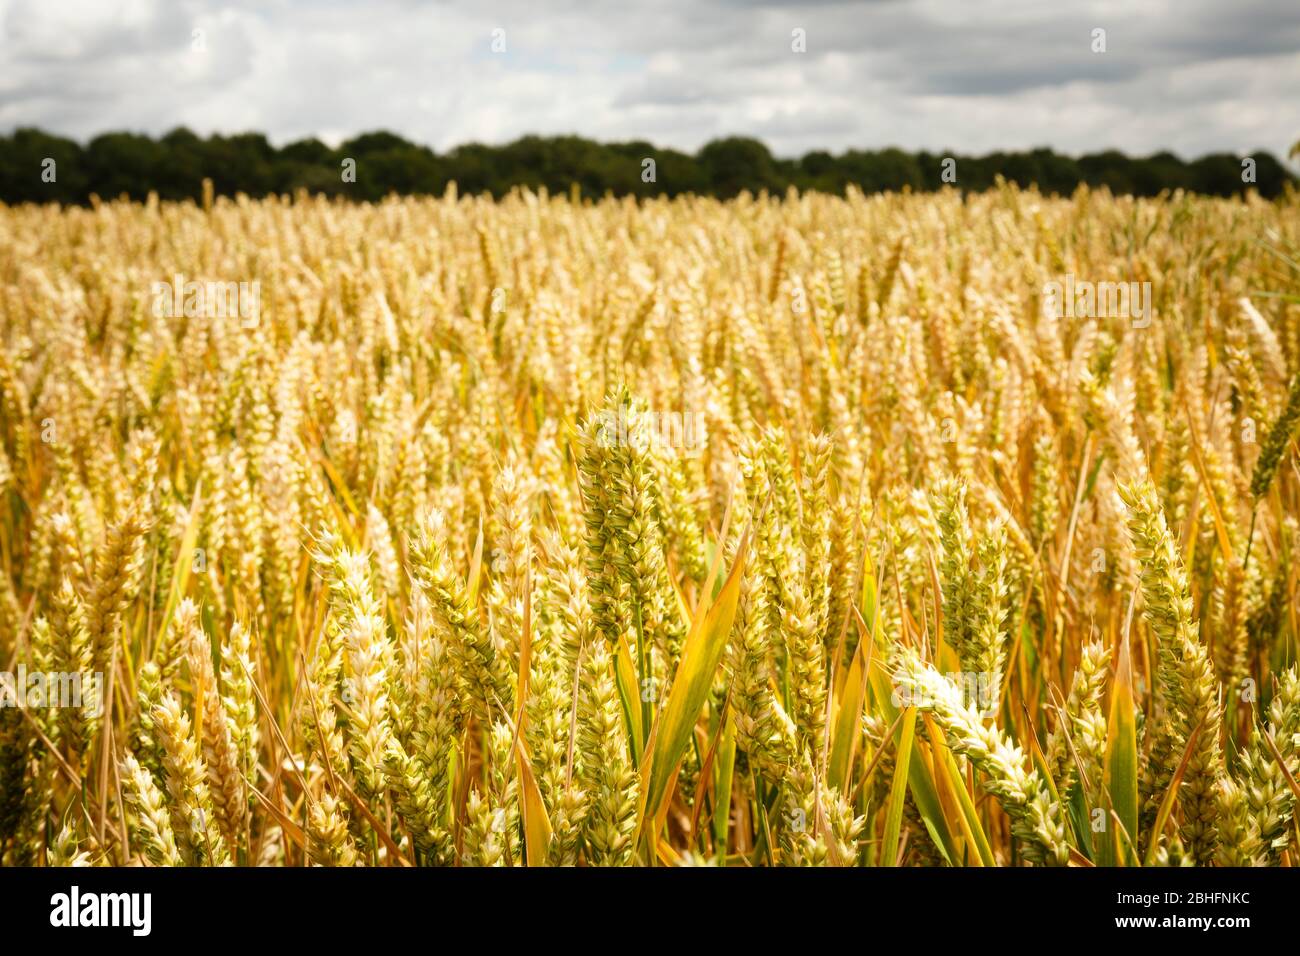 Closeup of golden wheat ears in a field in summer, UK farm scene Stock Photo